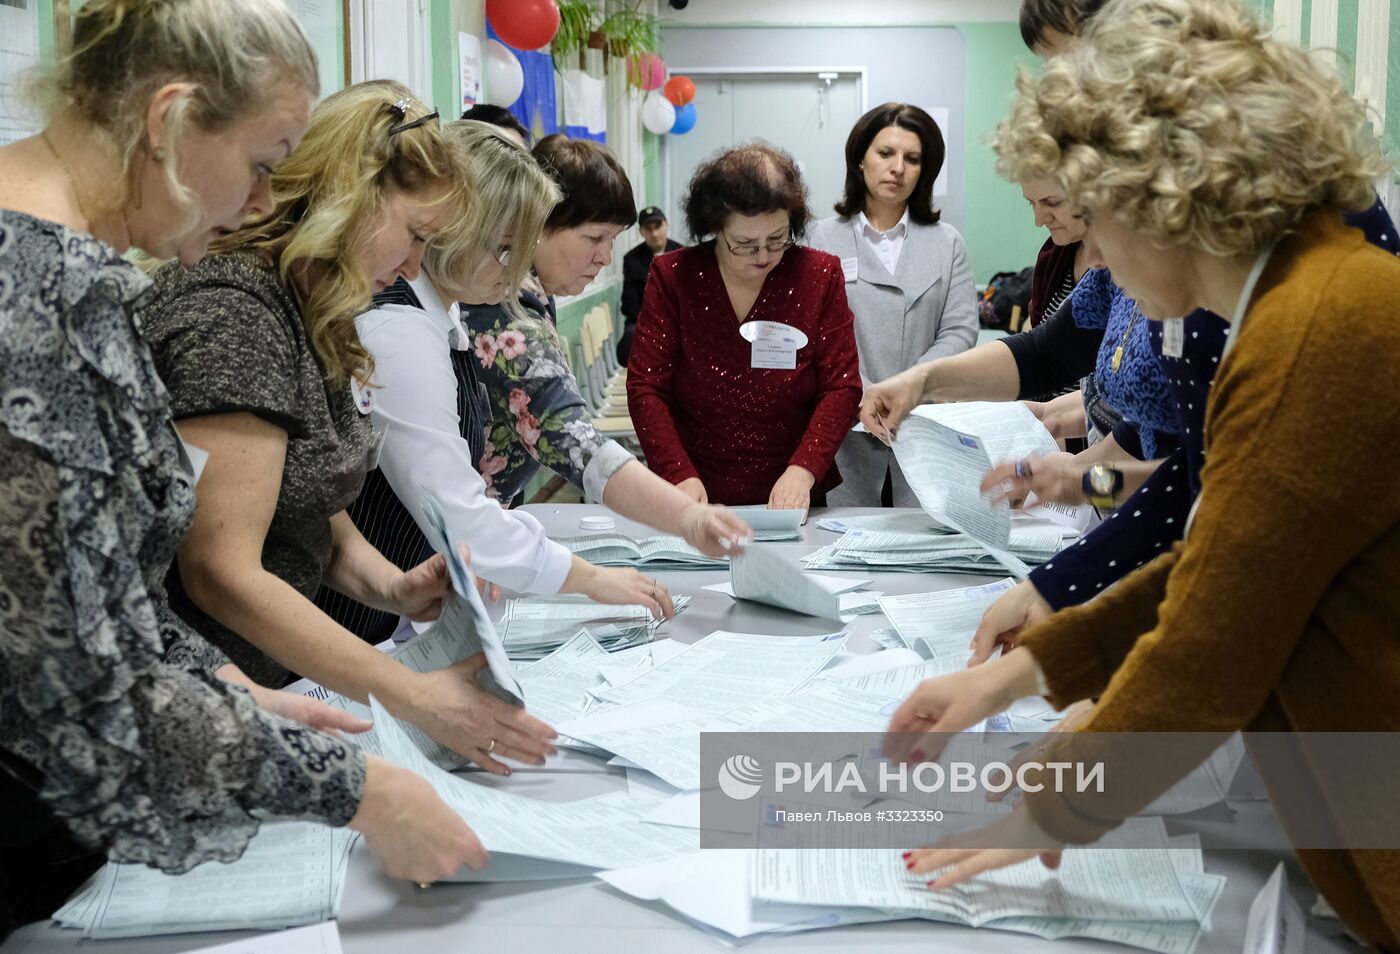 Подсчет голосов на выборах президента РФ